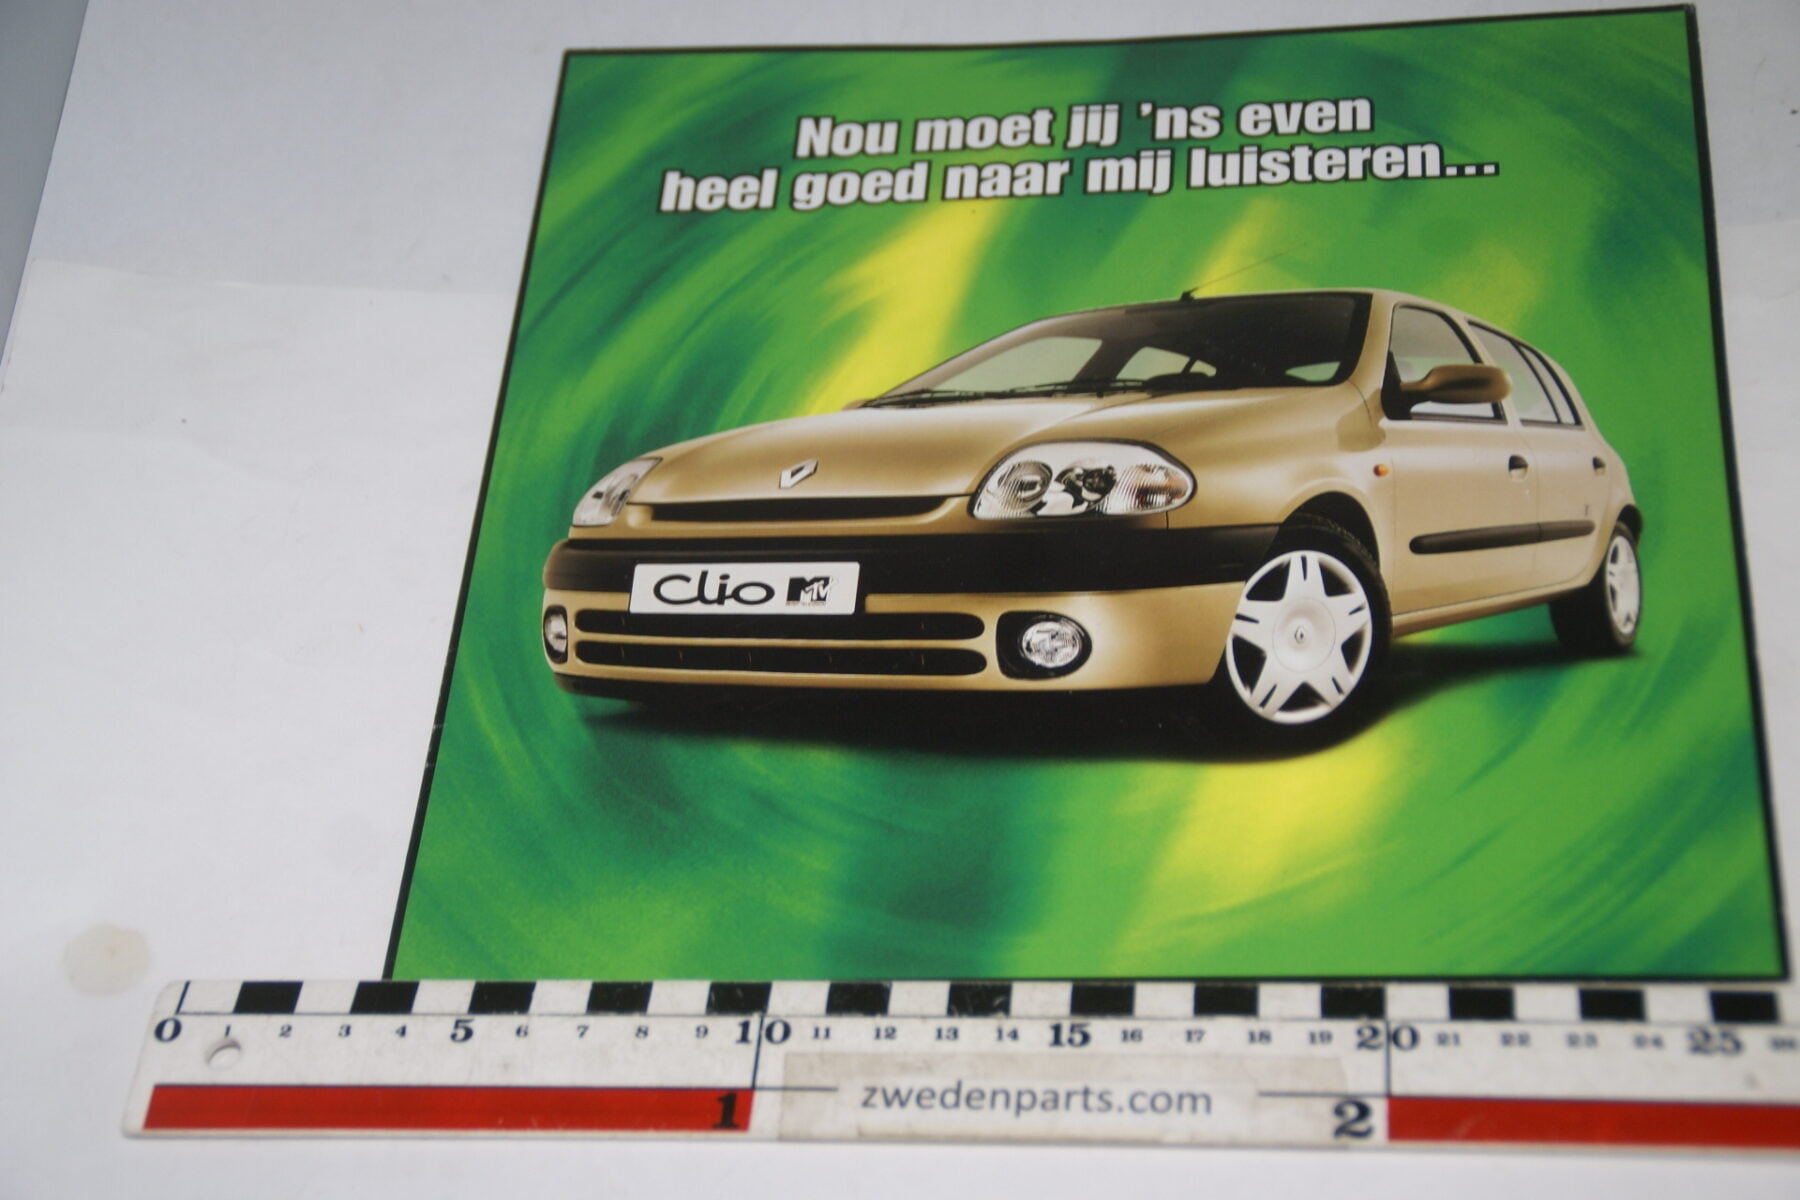 DSC08395 originele brochure Renault Clio met CD-9ce426bf